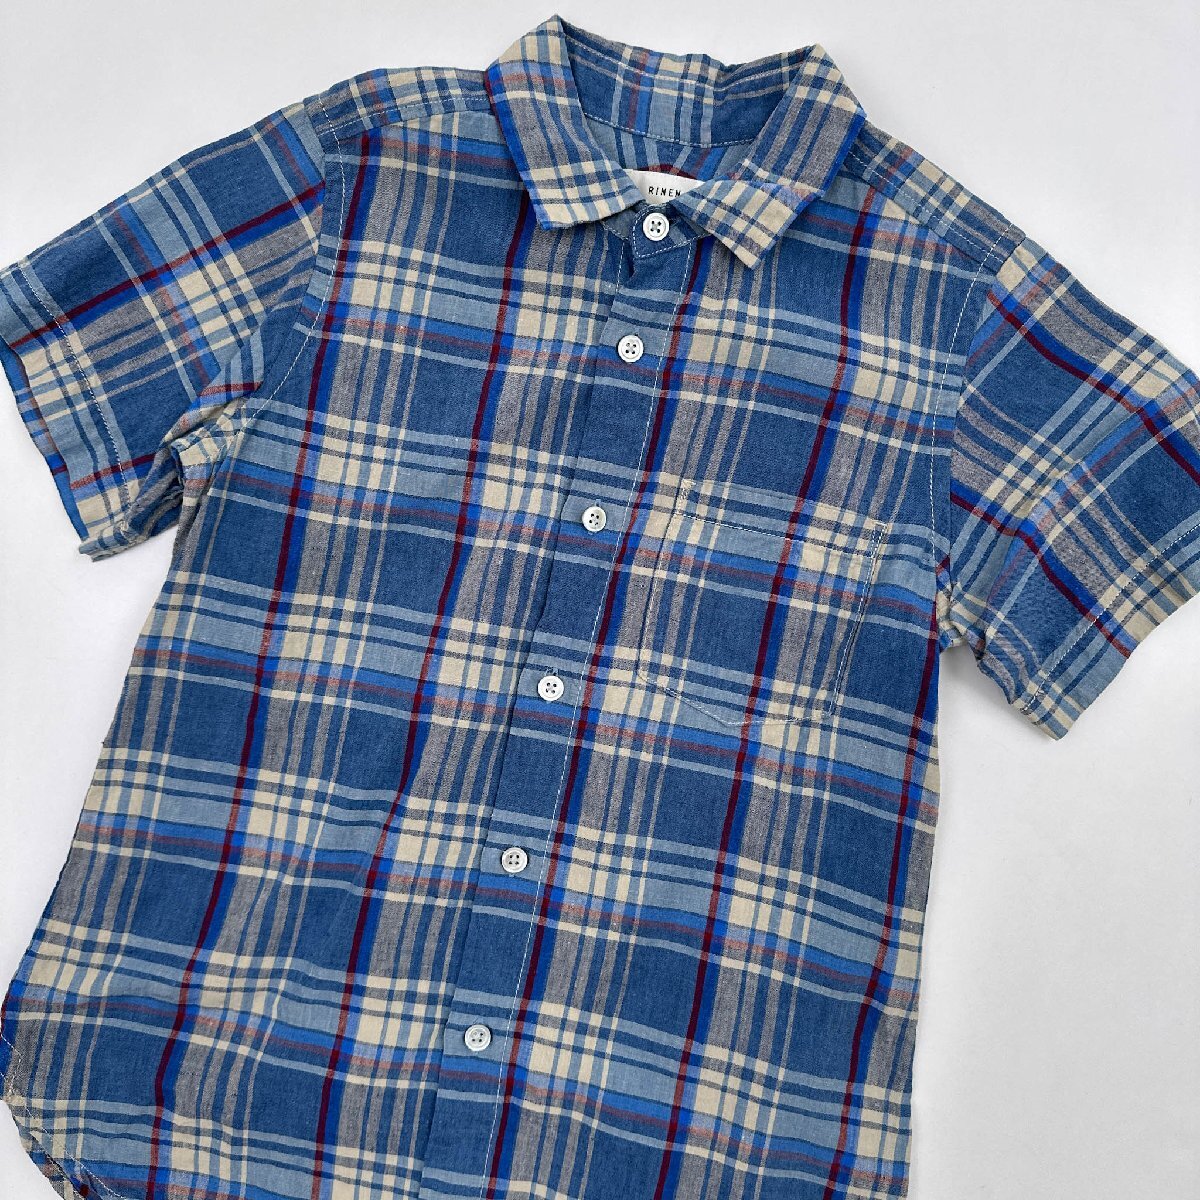 RINEN リネン 麻100% マドラスチェック 半袖シャツ サイズ 0/ブルー 系 日本製 TRIP_画像2